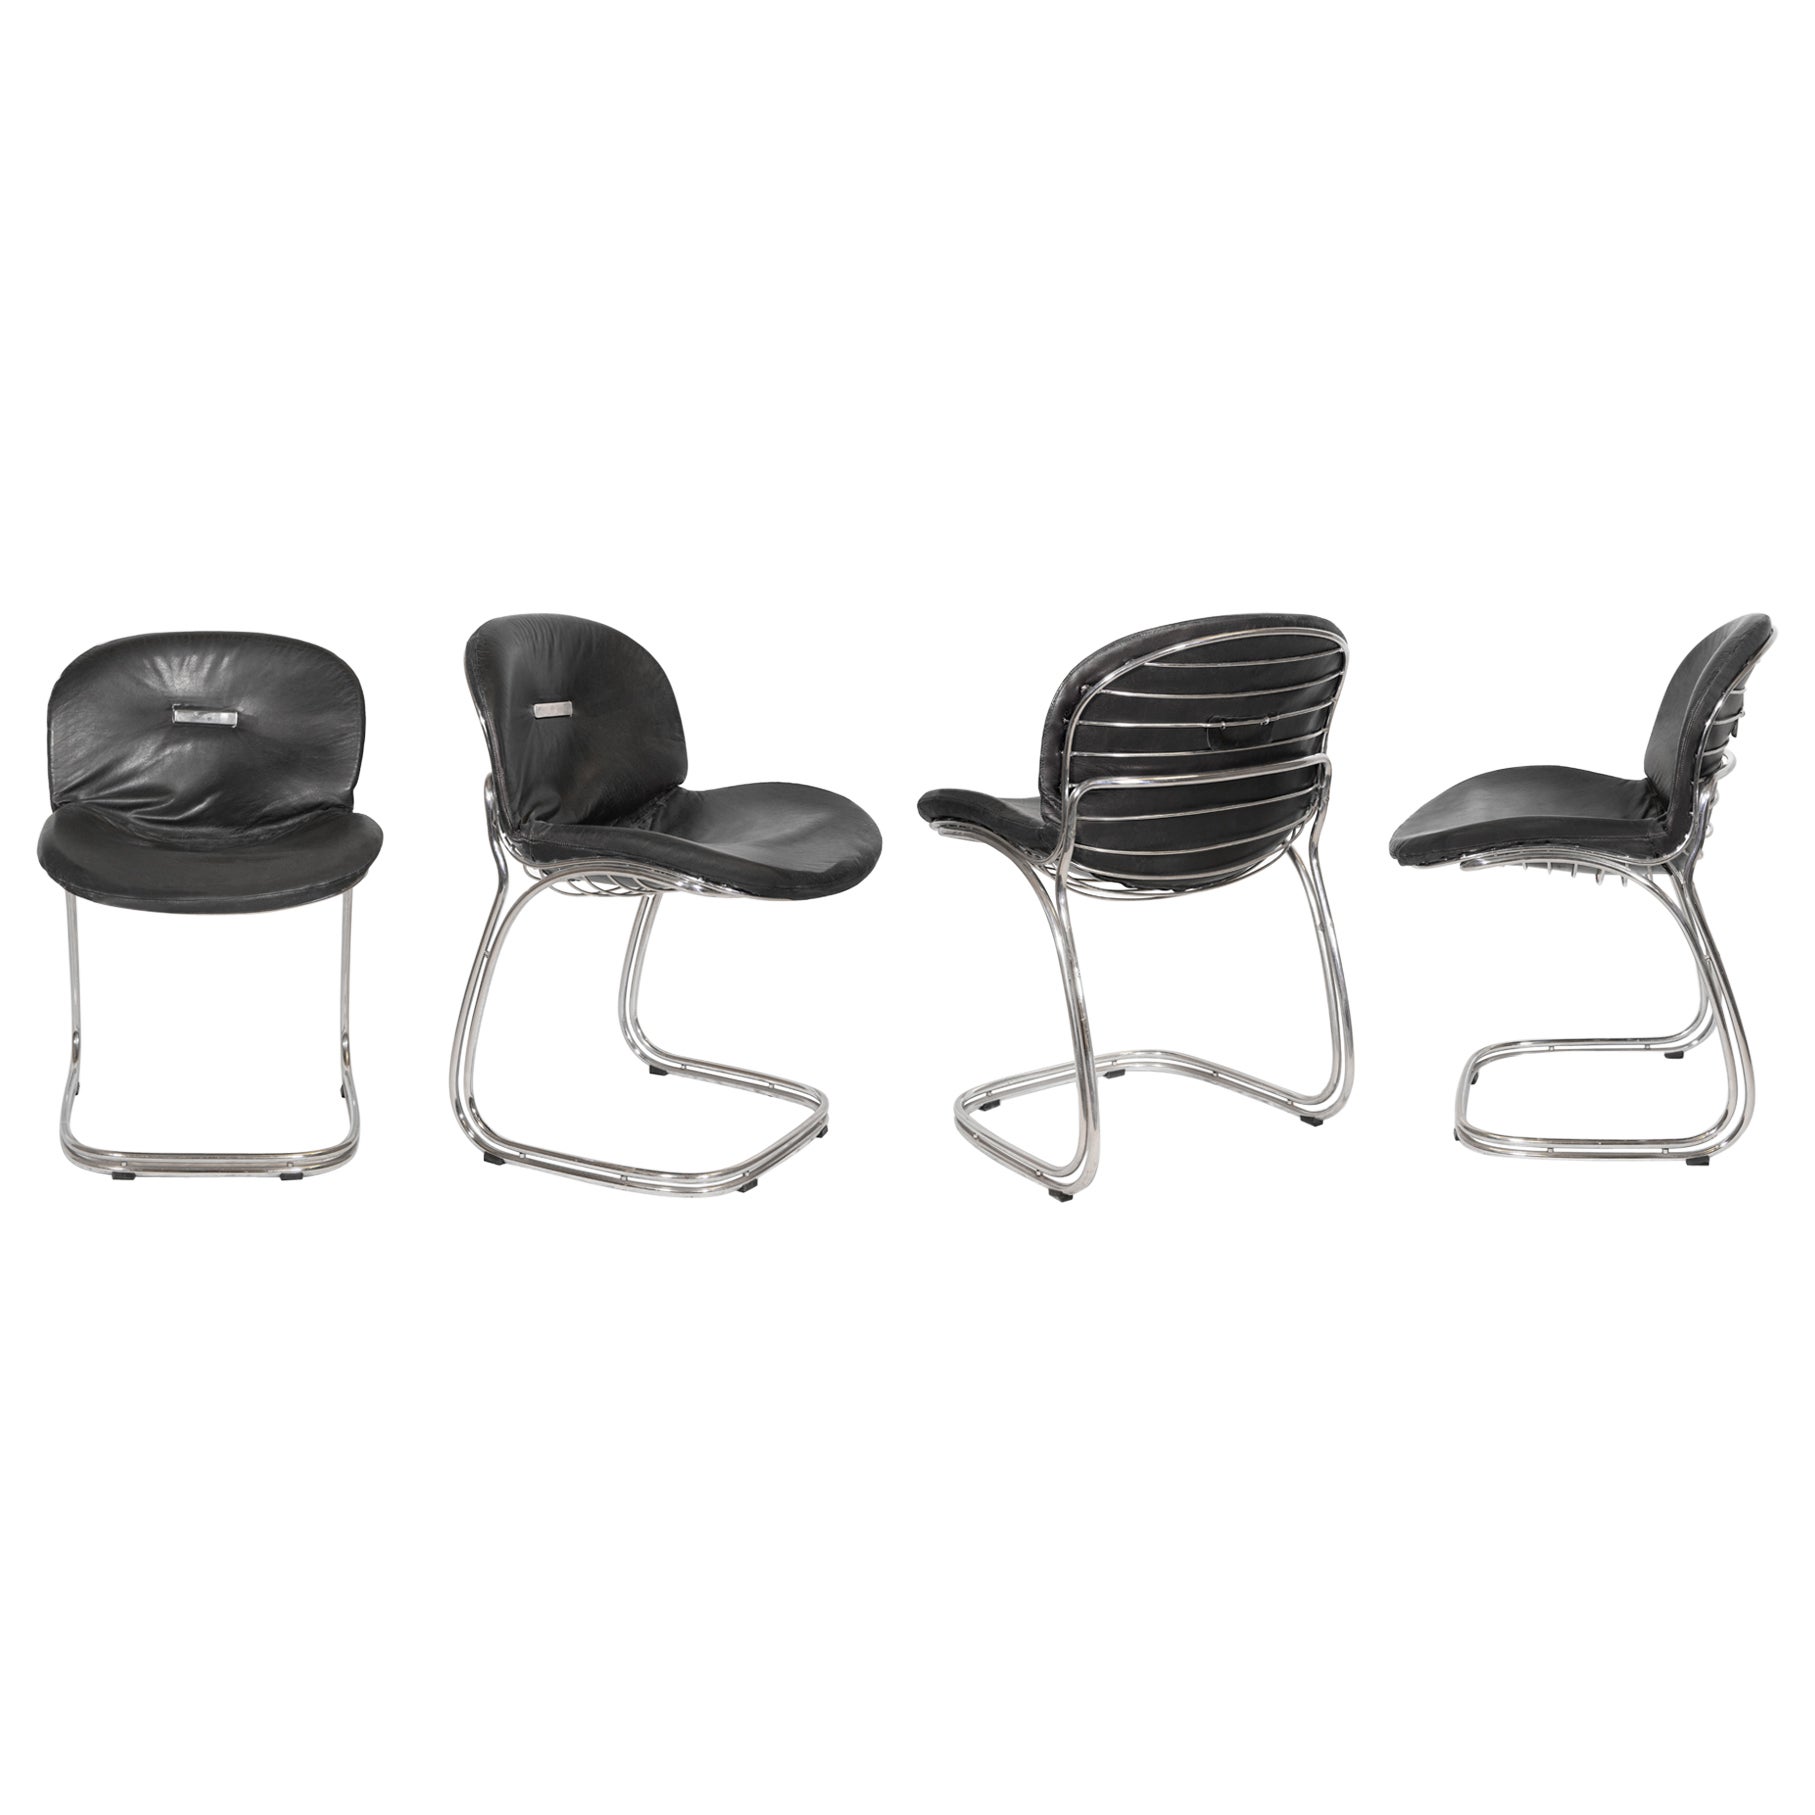 Vier von Gastone Rinaldi entworfene Stühle – Italien 1970er Jahre